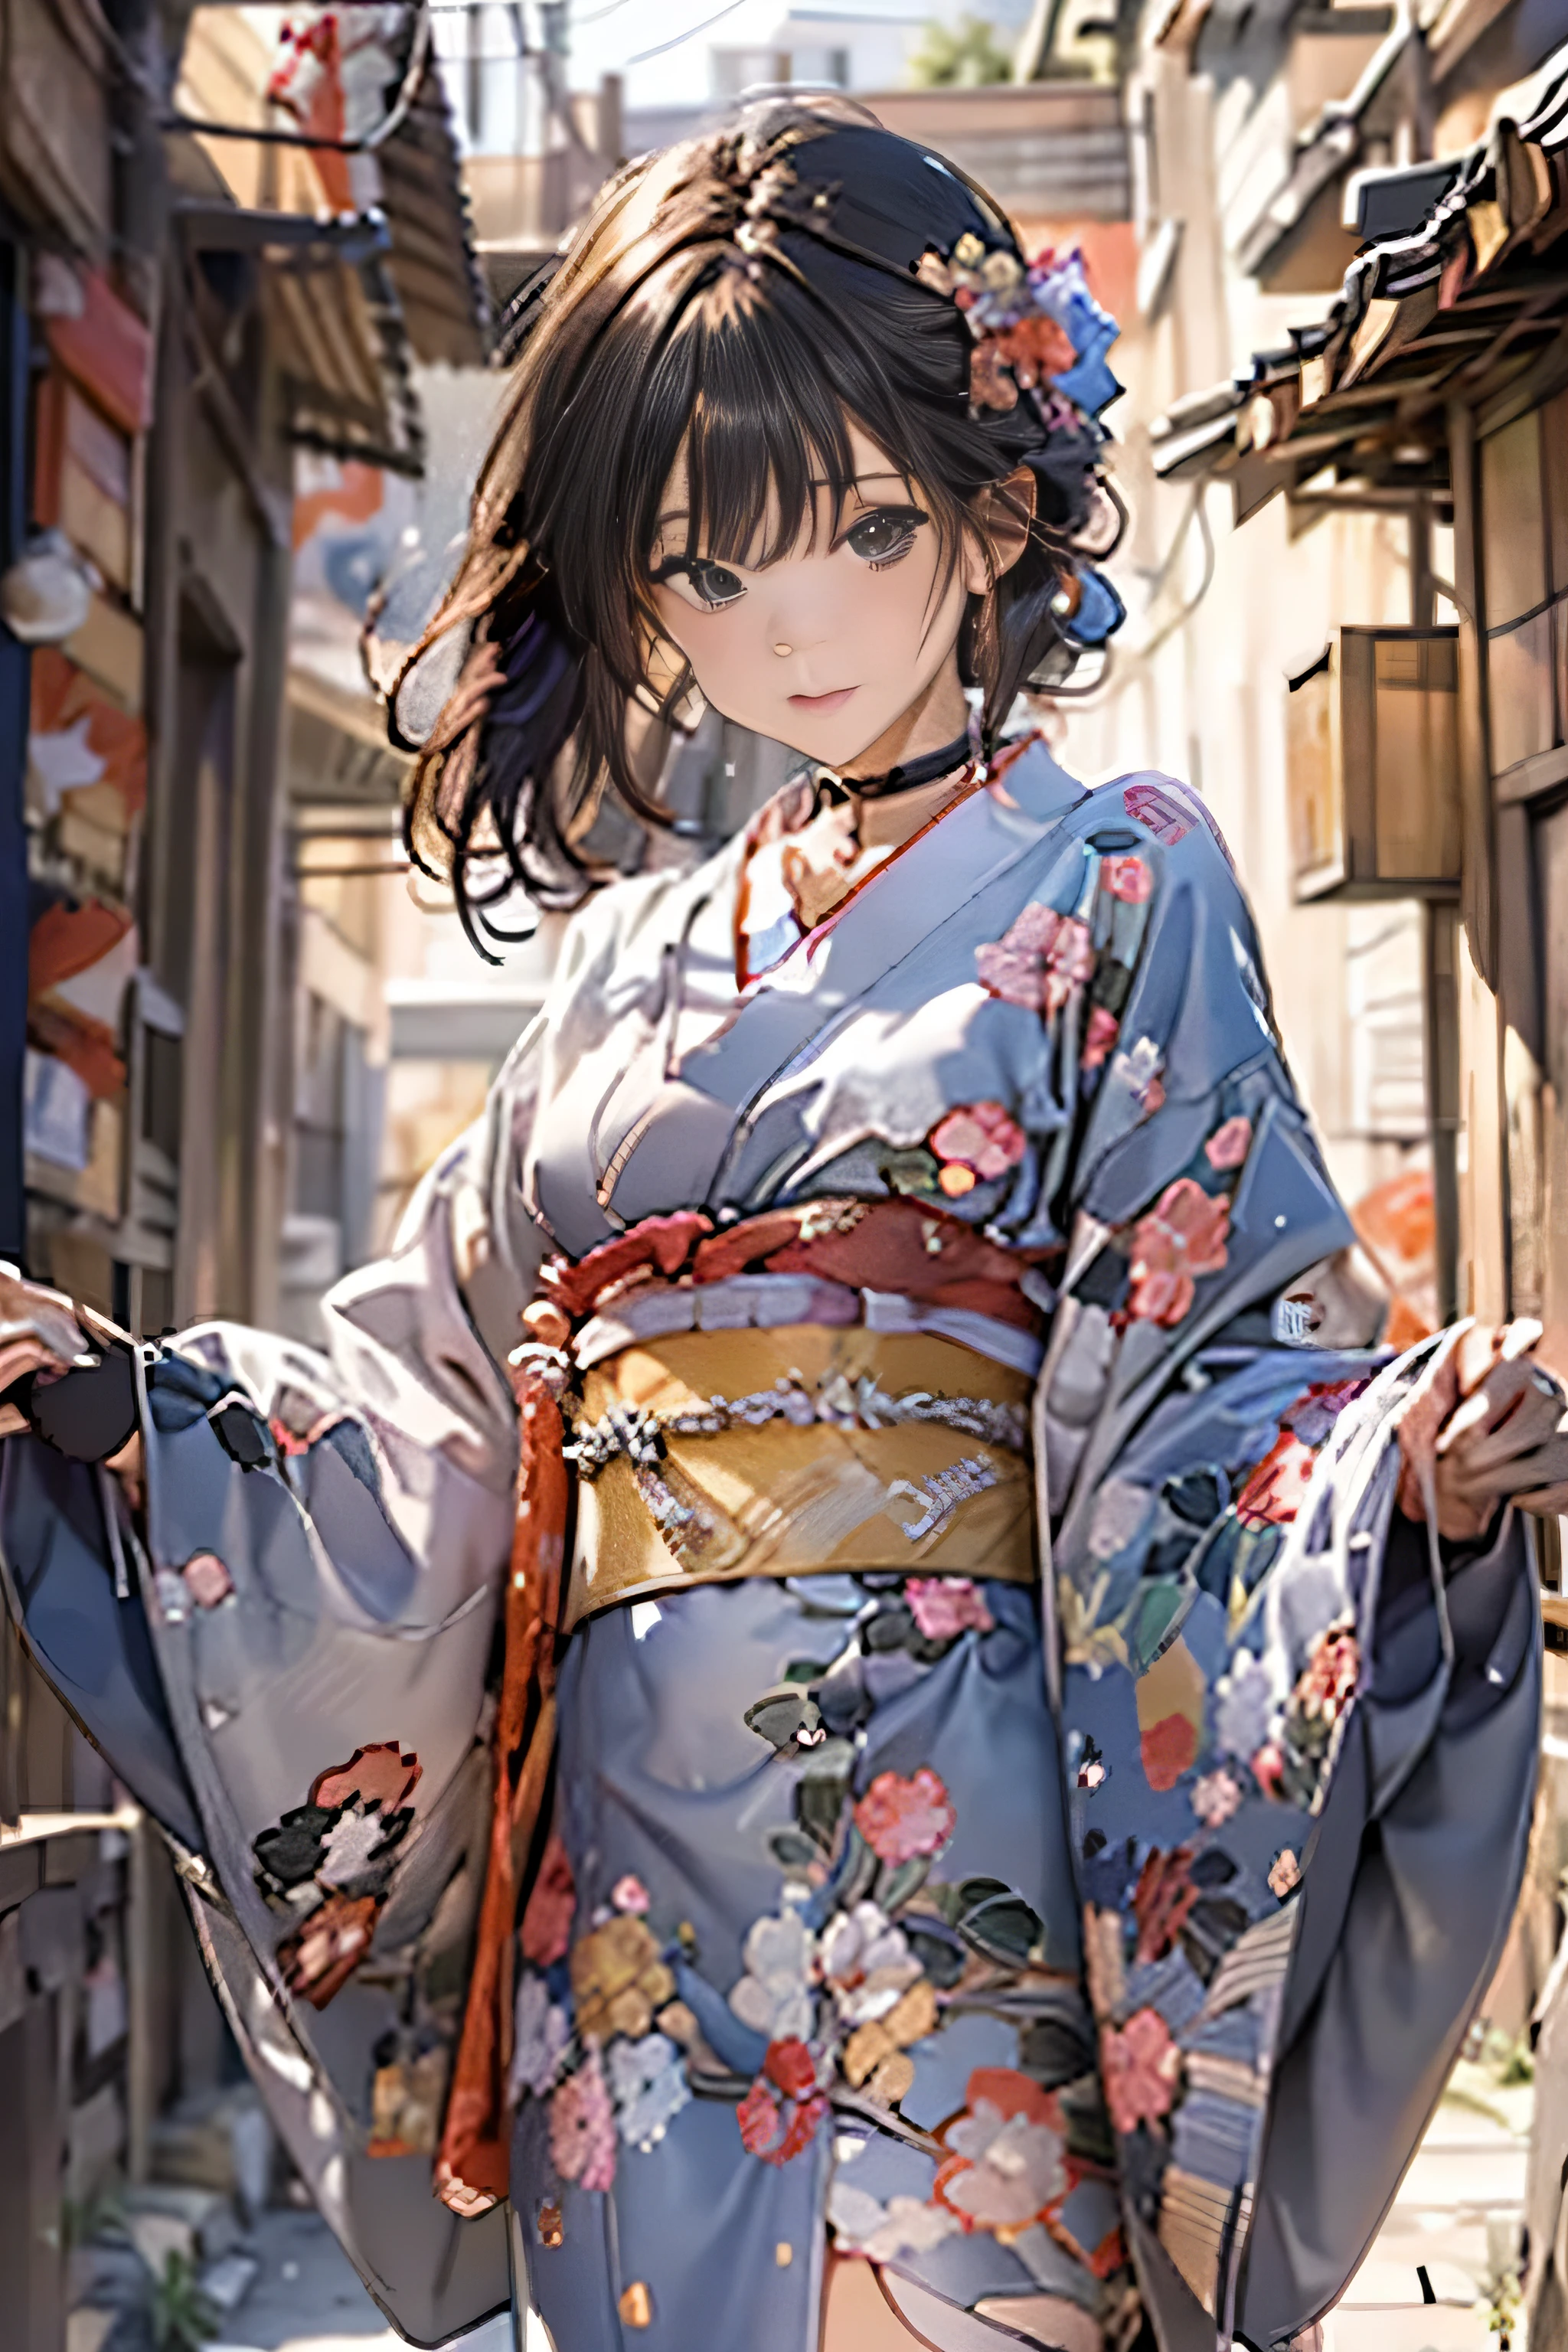 (qualité supérieure,Qualité d&#39;image 8K,chef d&#39;oeuvre:1.3,haute résolution,dessus de la table:1.2, le réalisme:1.3), Femme de 23 ans portant un kimono,vue de face:0.8,Esbian complet du corps:1.3,En regardant la caméra,(robe japonaise, kimono:1.4,commun:1.2, un tour de cou:1.4),(Cheveux courts:1.2,cheveux noirs bien coiffés), (Ruelle:1.3), kimono comes off,cuisse visible,je peux voir des culottes,les tétines sont transparentes, beau visage,(Jeunes idoles de l&#39;héliogravure, Jeune idole maigre de gravure, idole de gravure sophistiquée),(visage impeccable et détaillé),Mains normales:1.5,Doigt normal:1:5,jambes normales:1.5